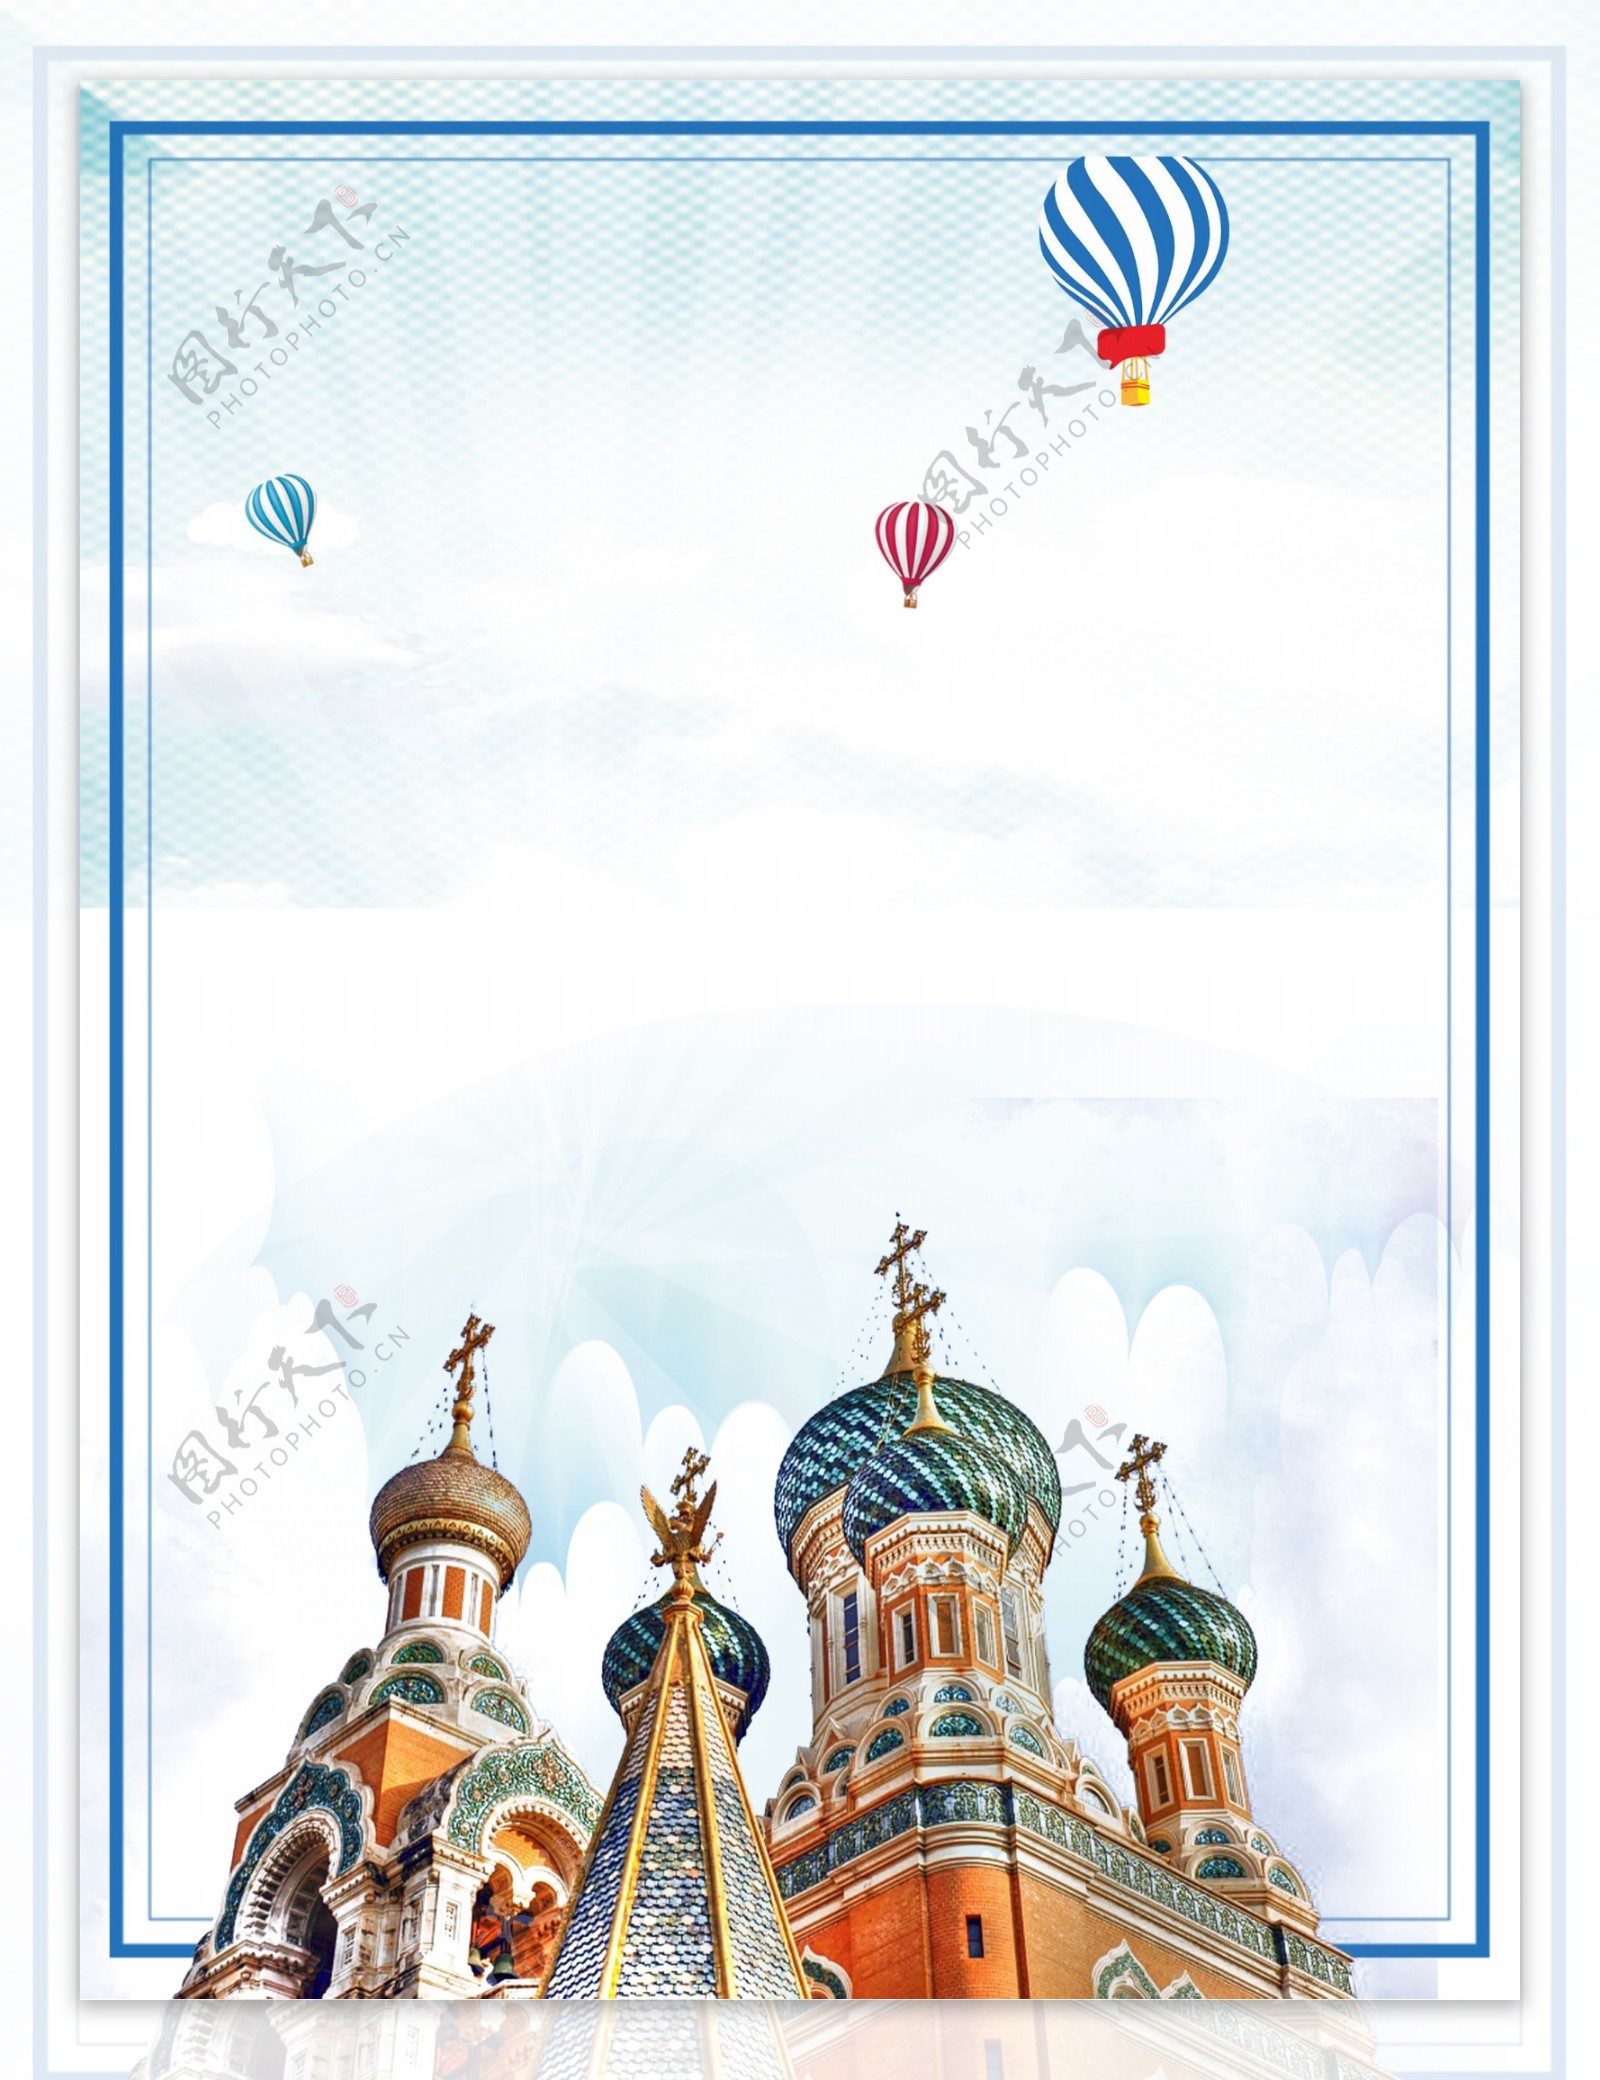 简约俄罗斯建筑物热气球背景素材